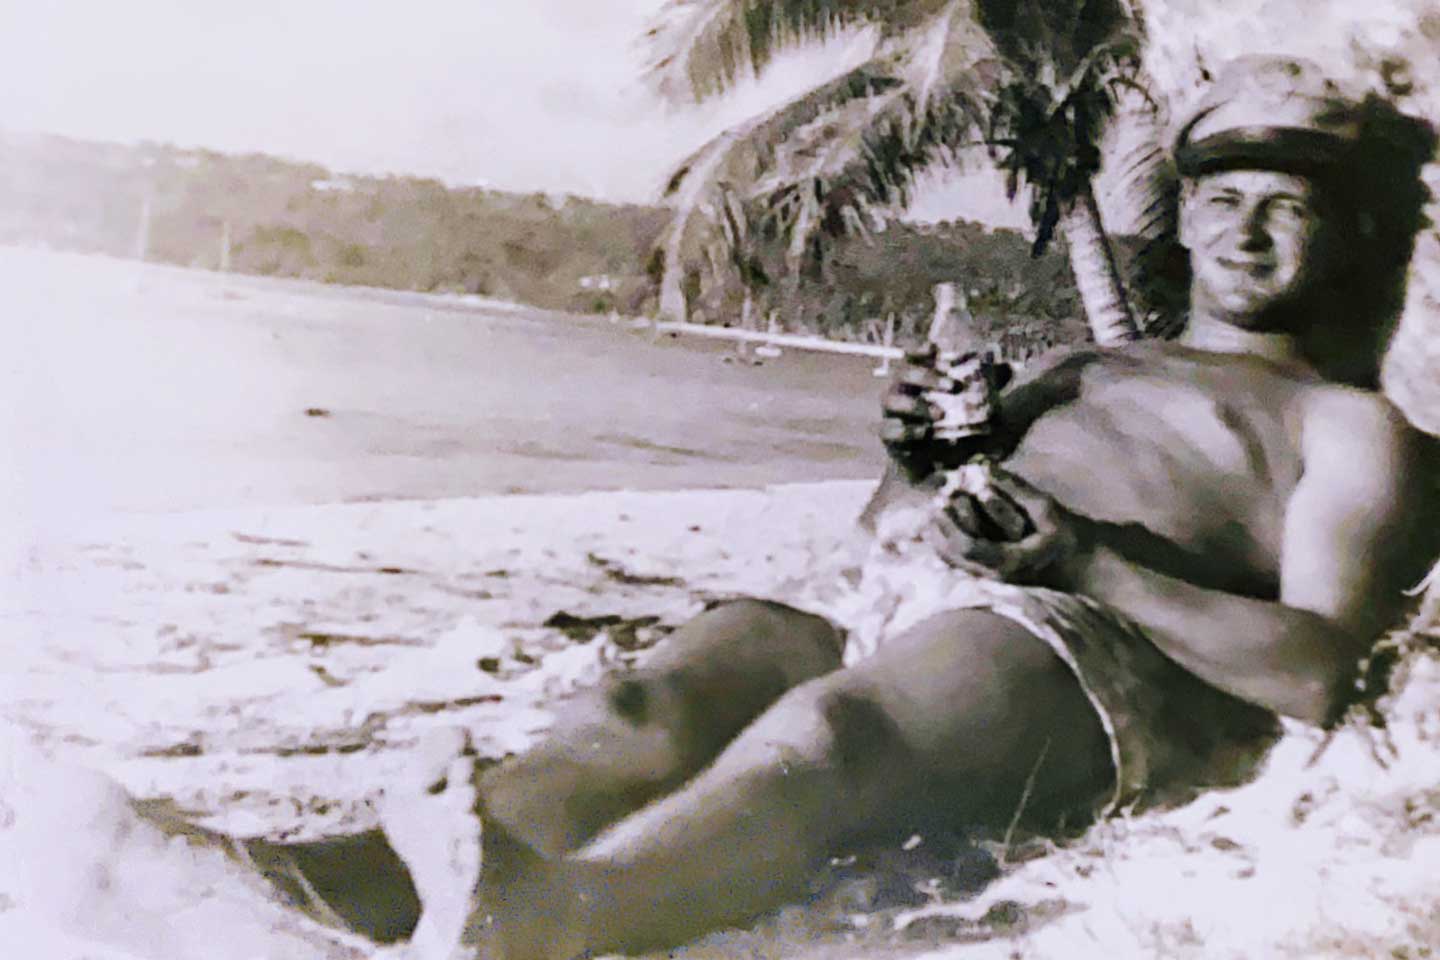 Paul de joven y tumbado sin camiseta en la playa.